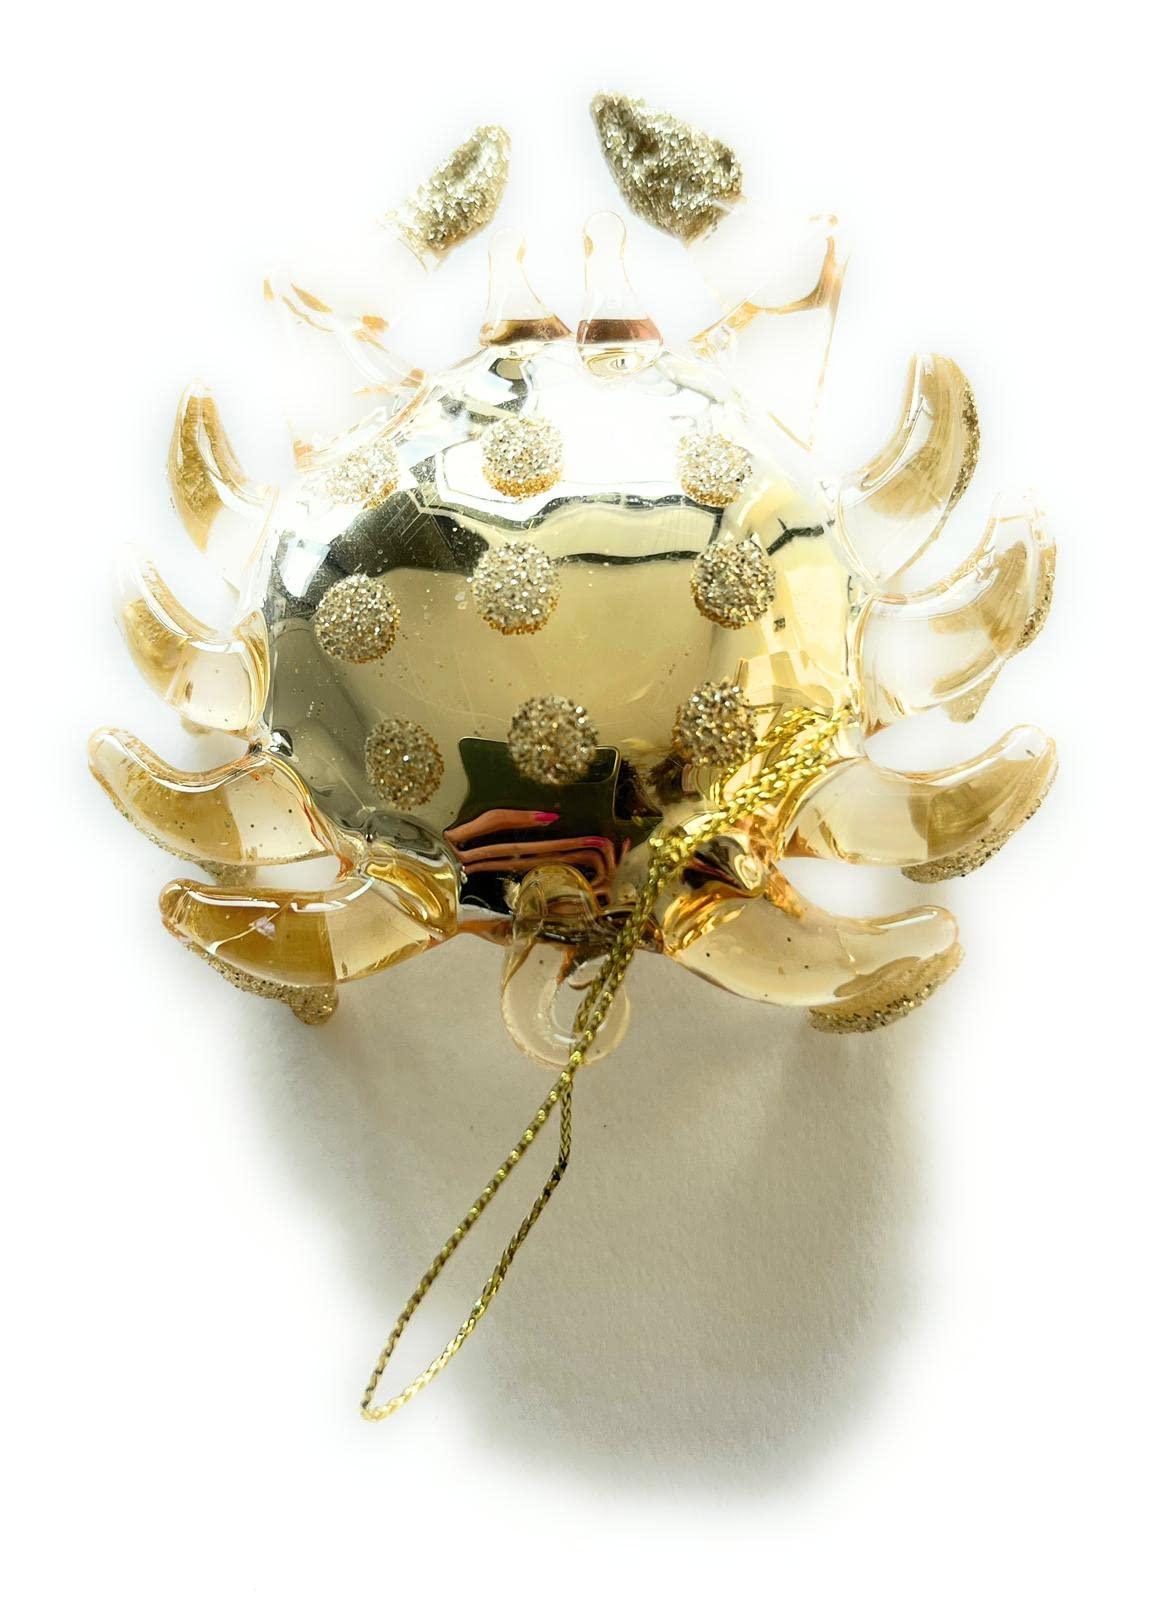 Confezione da 2 Granchietti - decorazioni di Natale 1 color oro e 1 color madreperla - MARIKA DE PAOLA - HOME DECOR